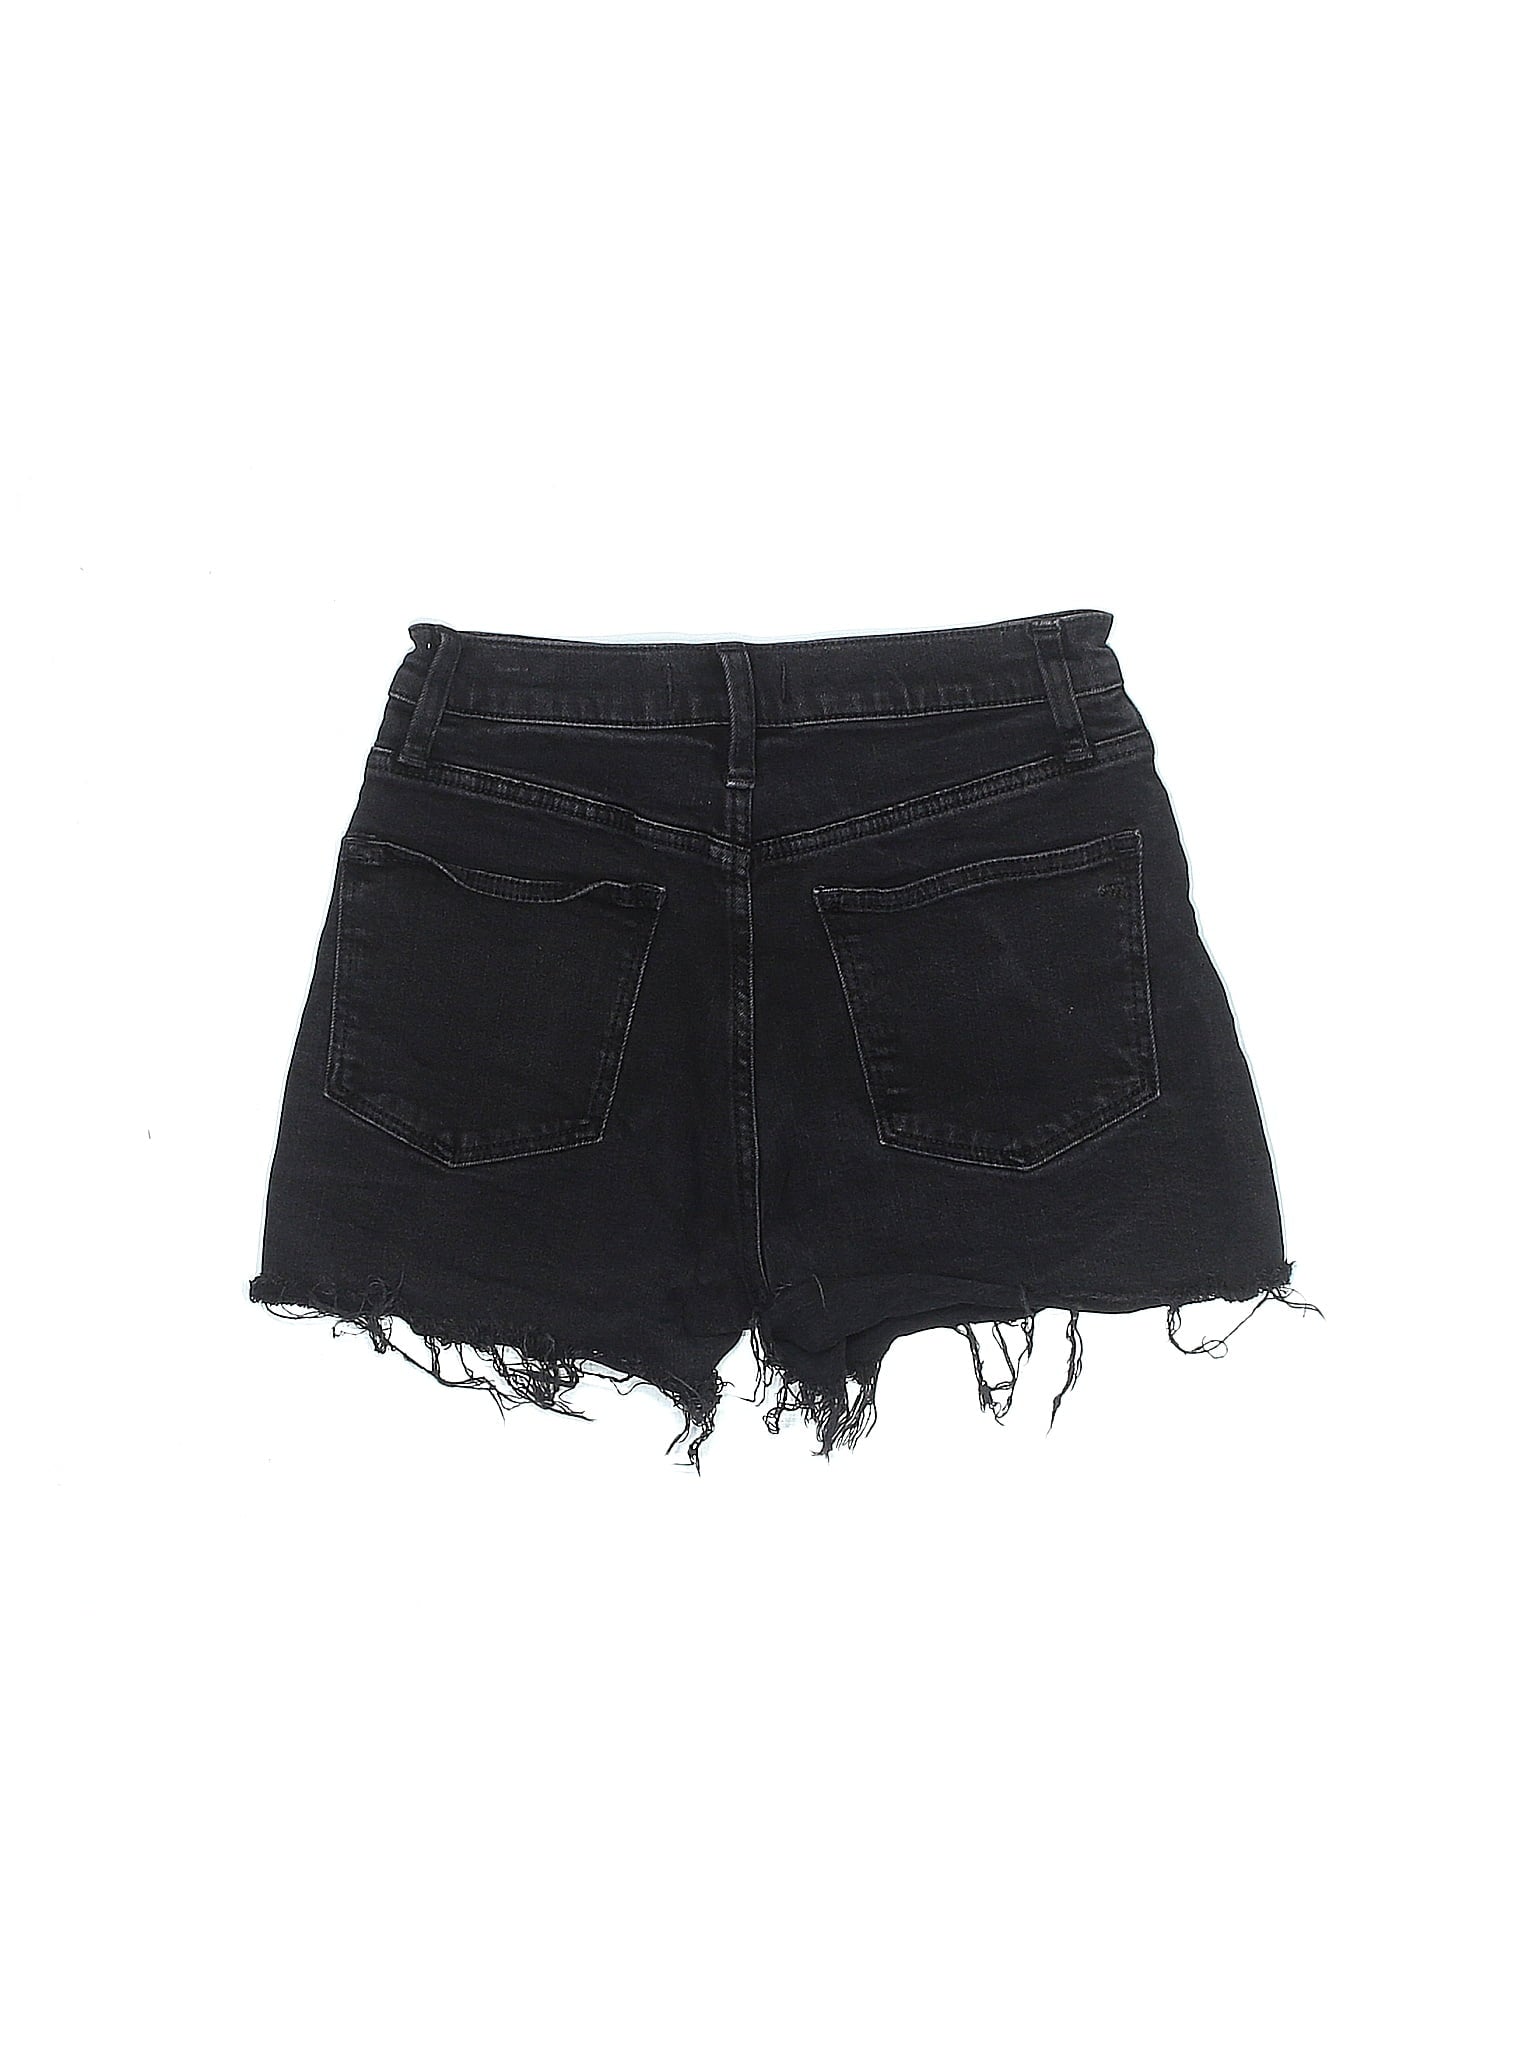 Mid-Rise Denim Shorts in Dark Wash waist size - 24